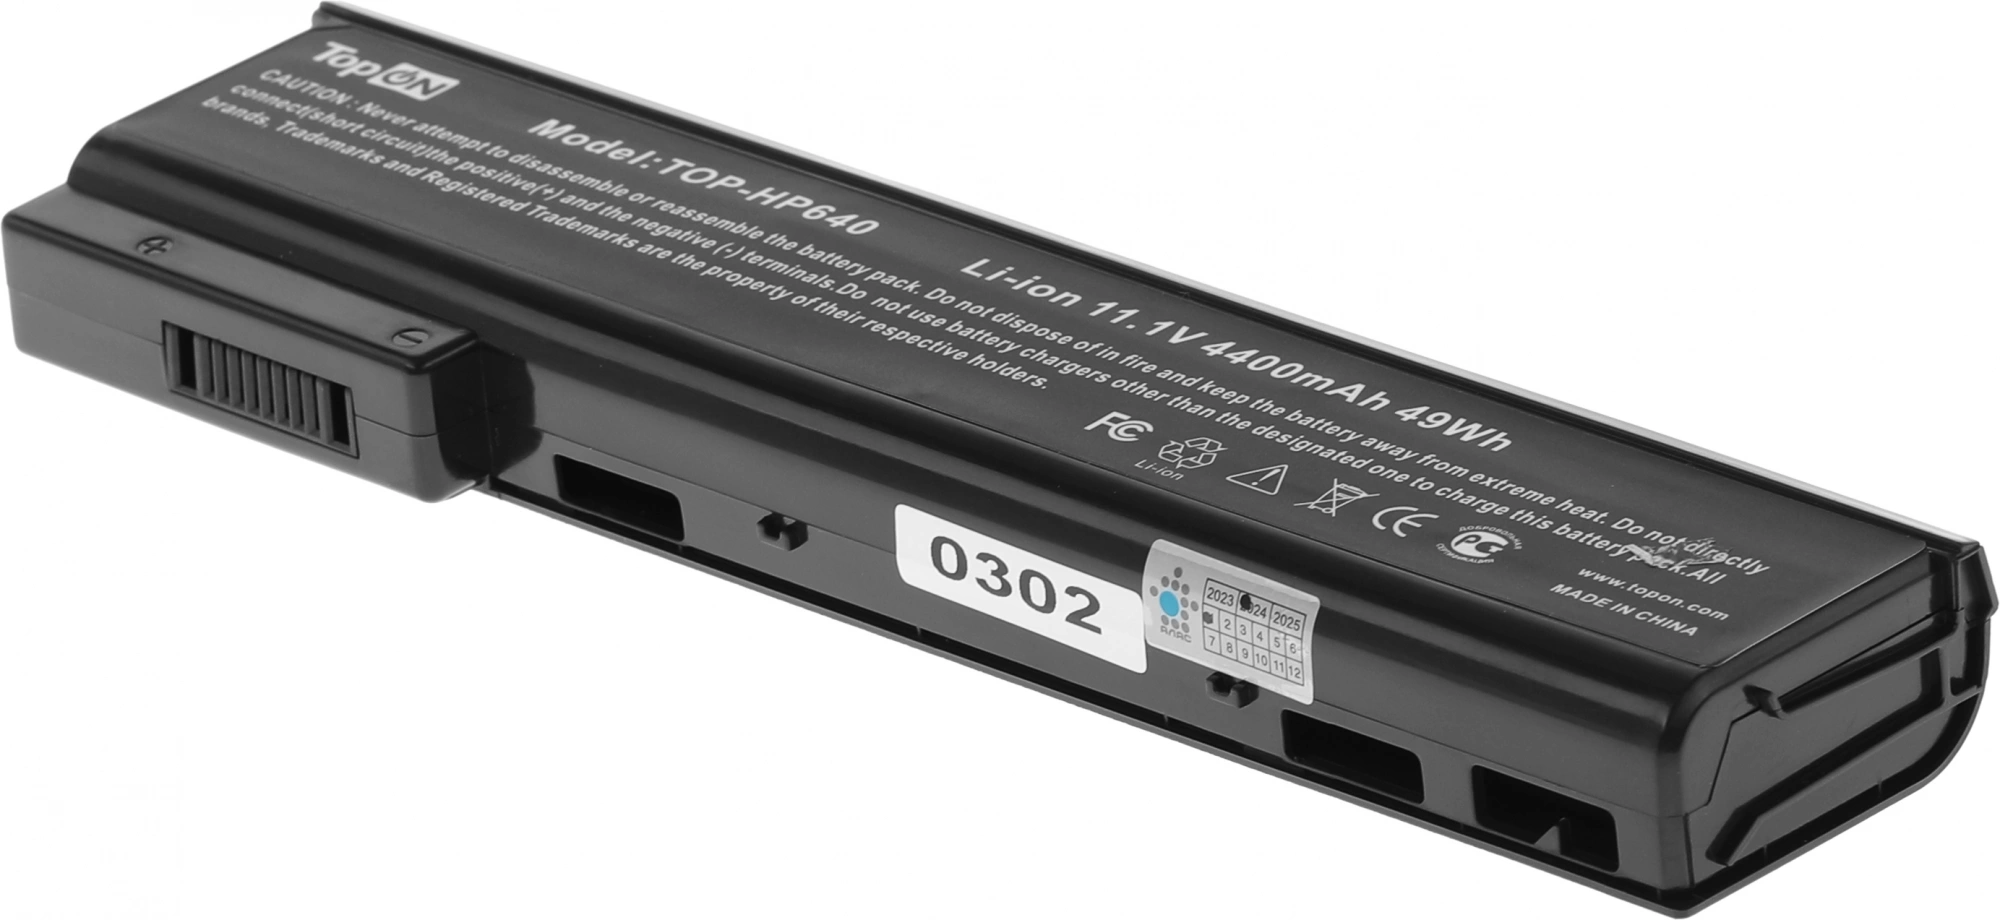 Батарея для ноутбука TopON TOP-HP640 10.8V 4400mAh литиево-ионная